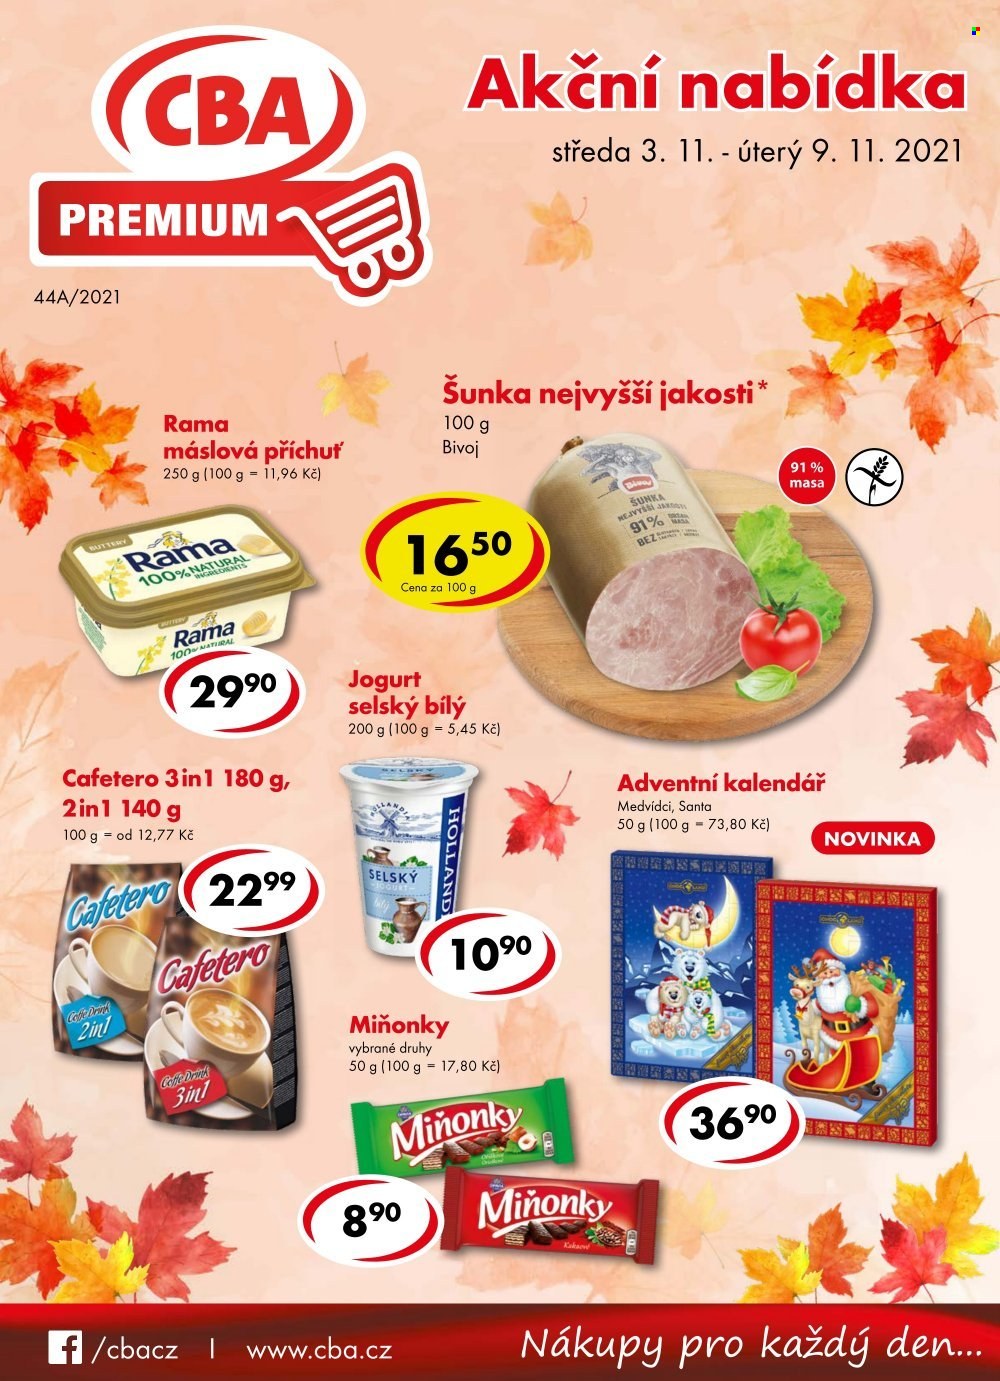 thumbnail - Leták CBA Premium - 3.11.2021 - 9.11.2021 - Produkty v akci - Bivoj, šunka, šunka nejvyšší jakosti, jogurt, bílý jogurt, Rama, margarín, Miňonky, adventní kalendář. Strana 1.